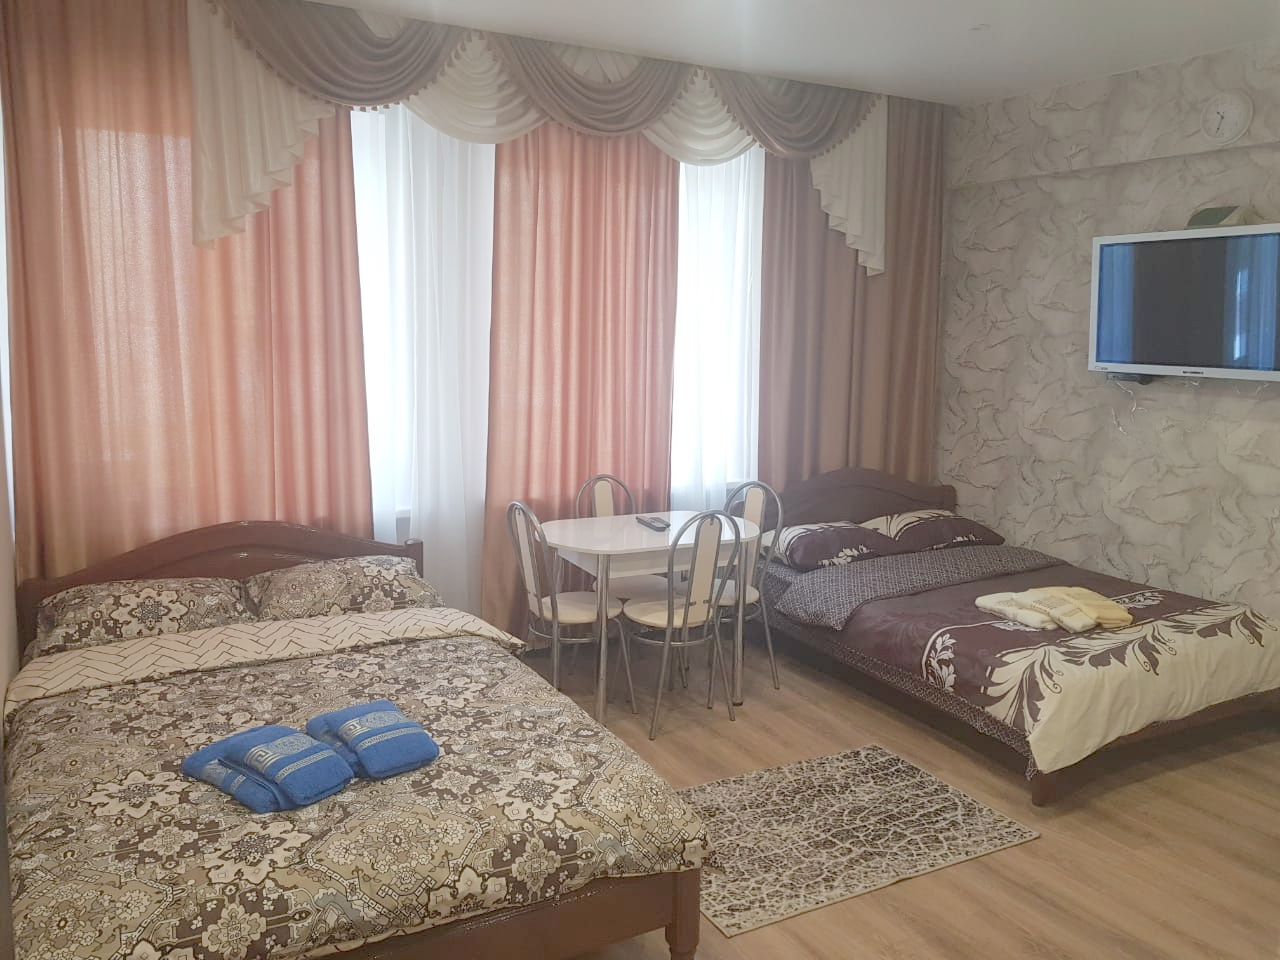 Однокомнатная квартира «9» на ул. Автозаводская 17к1 (30кв.м) до 4 гостей